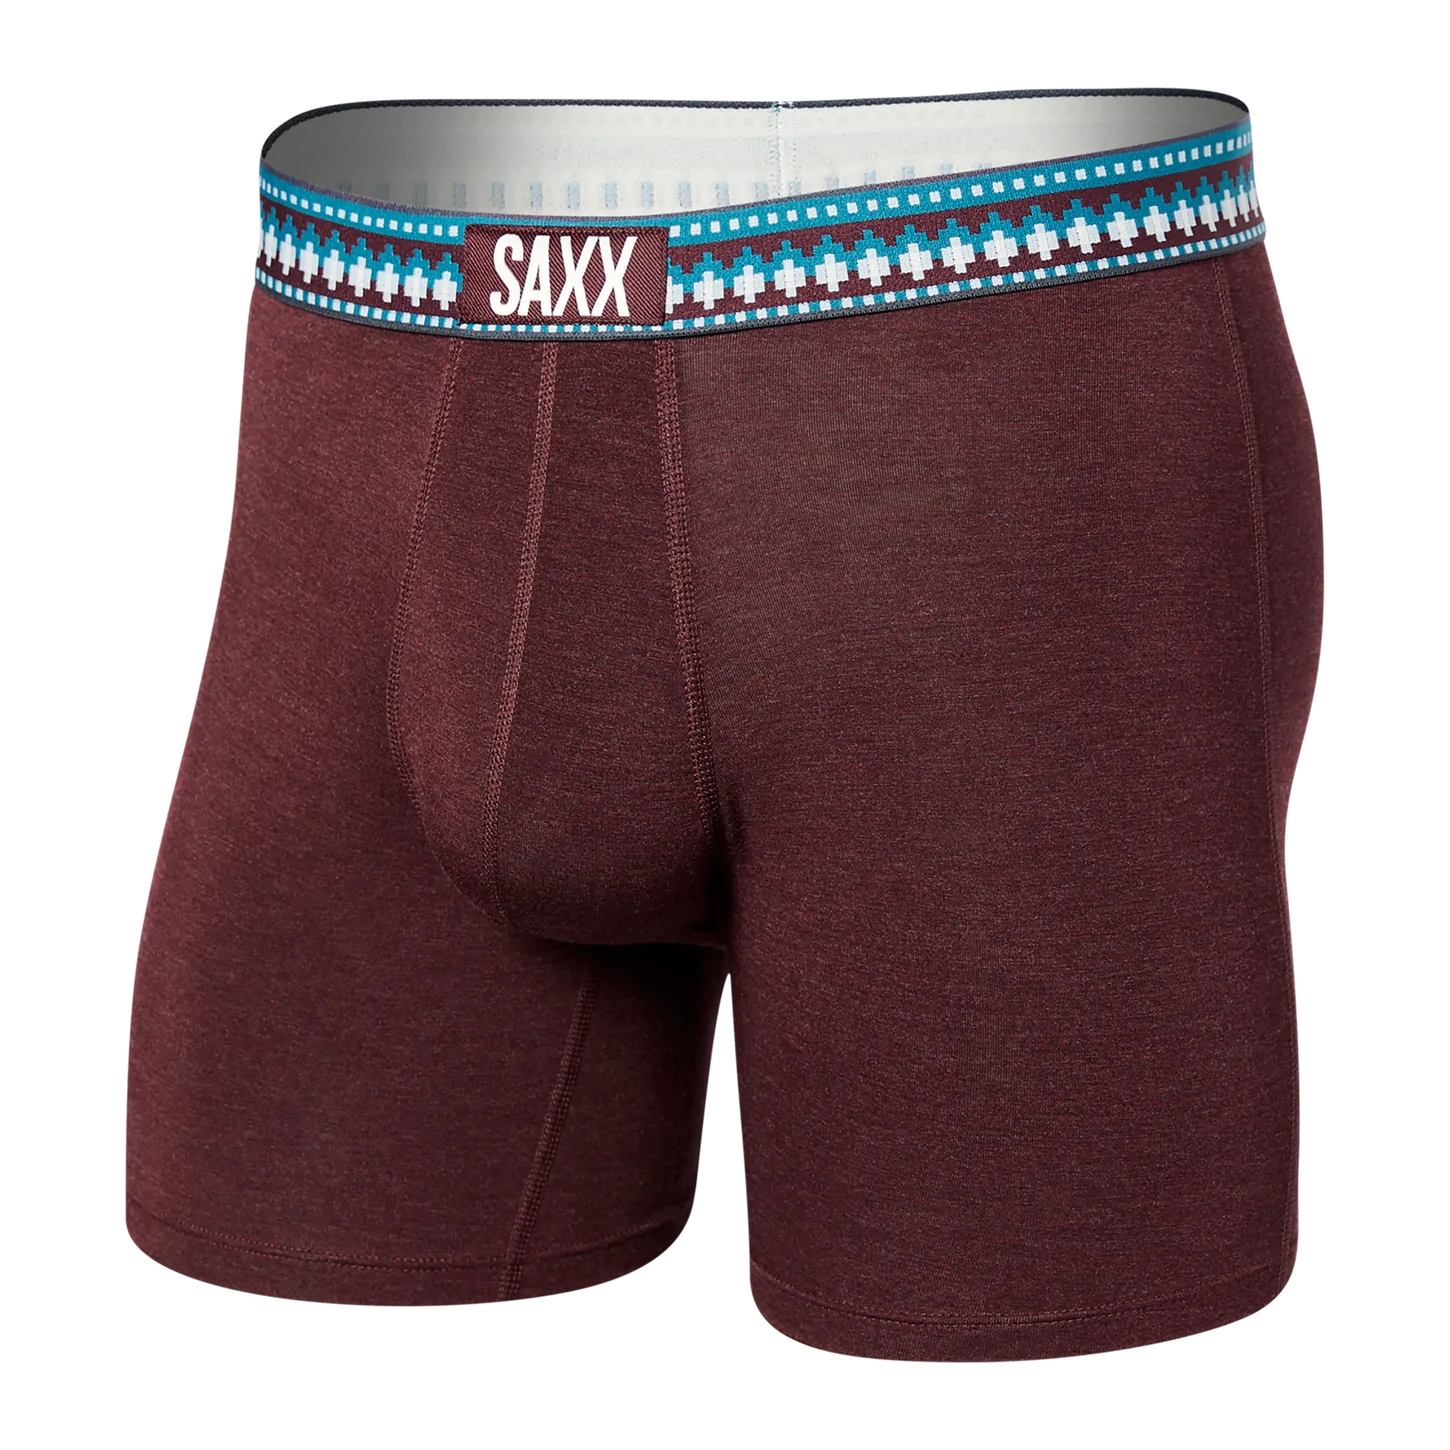 SAXX Vibe Super Soft Boxer Brief - Plum Heather Sweater Wb - Plum Heather - 1 - Underwear - Boxer Briefs